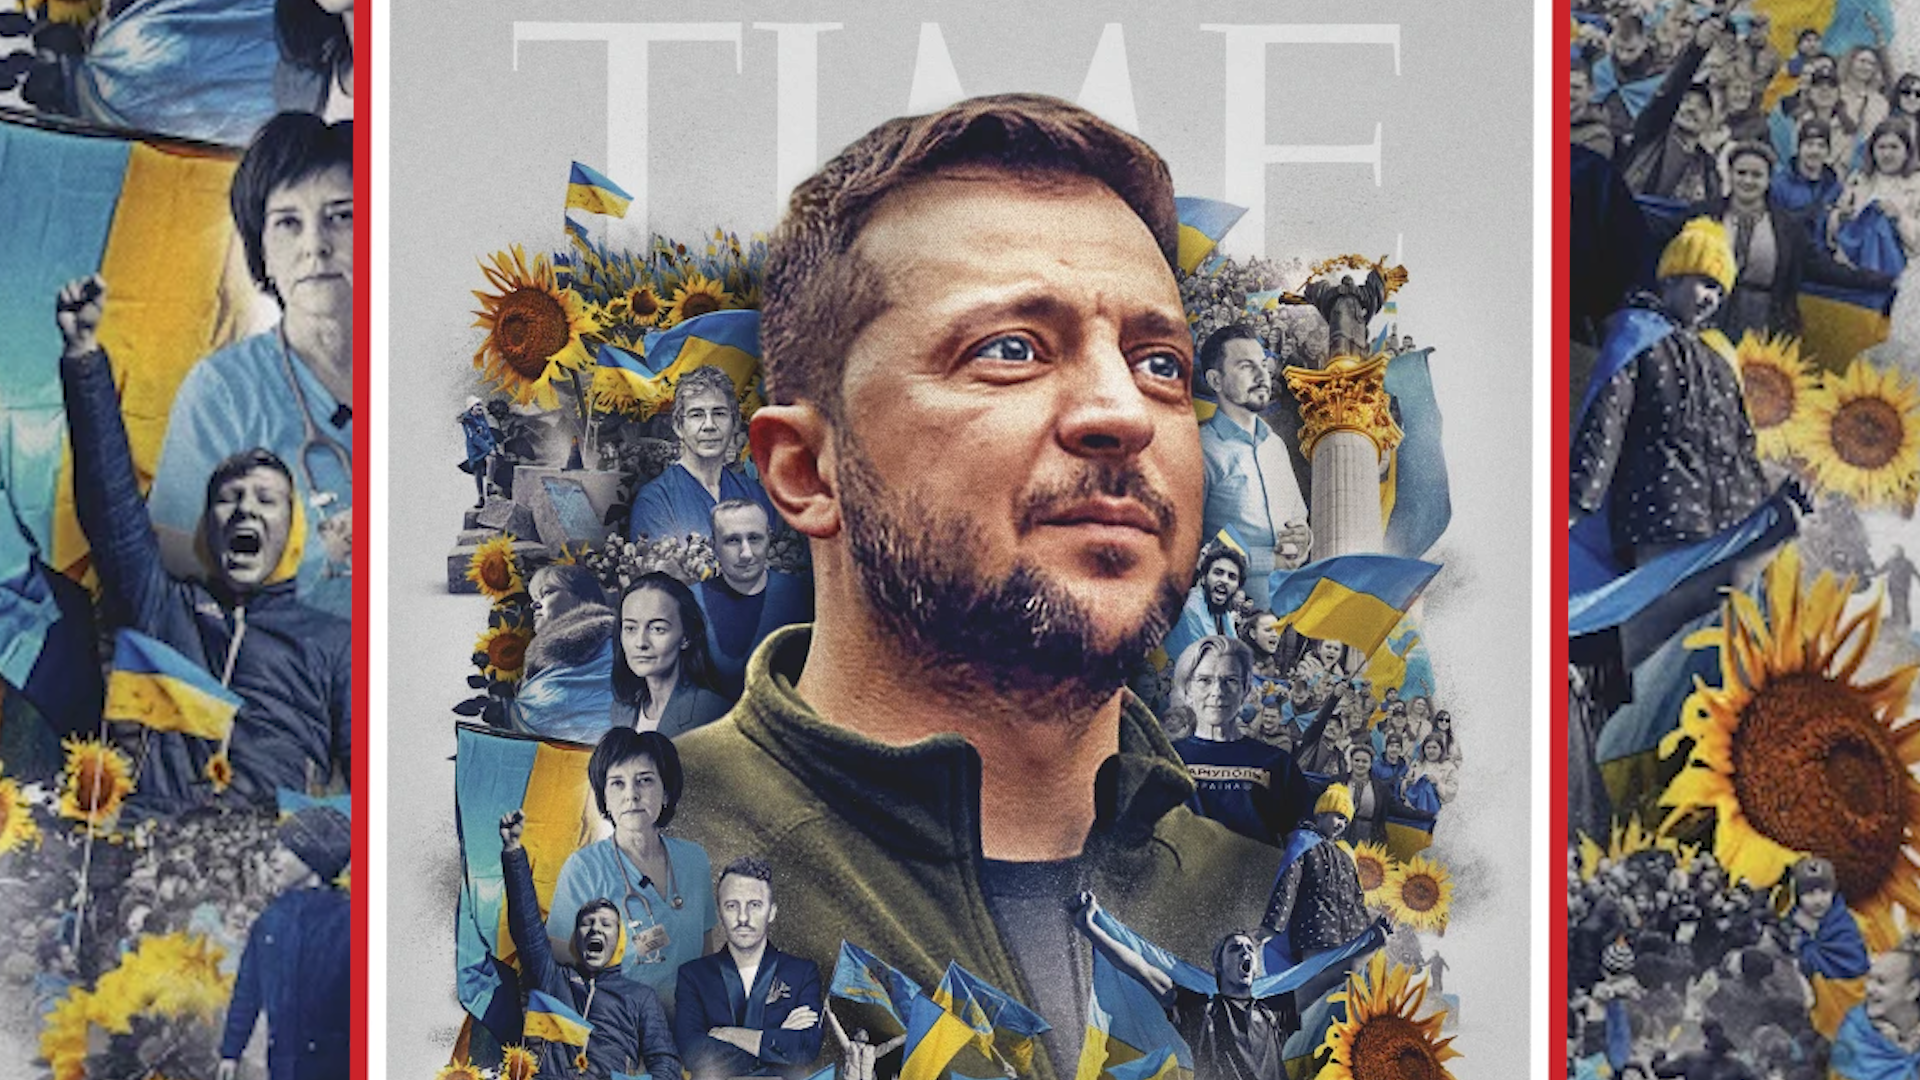 El presidente ucraniano, Volodymyr Zelenskyy, es la Persona del Año, según Time